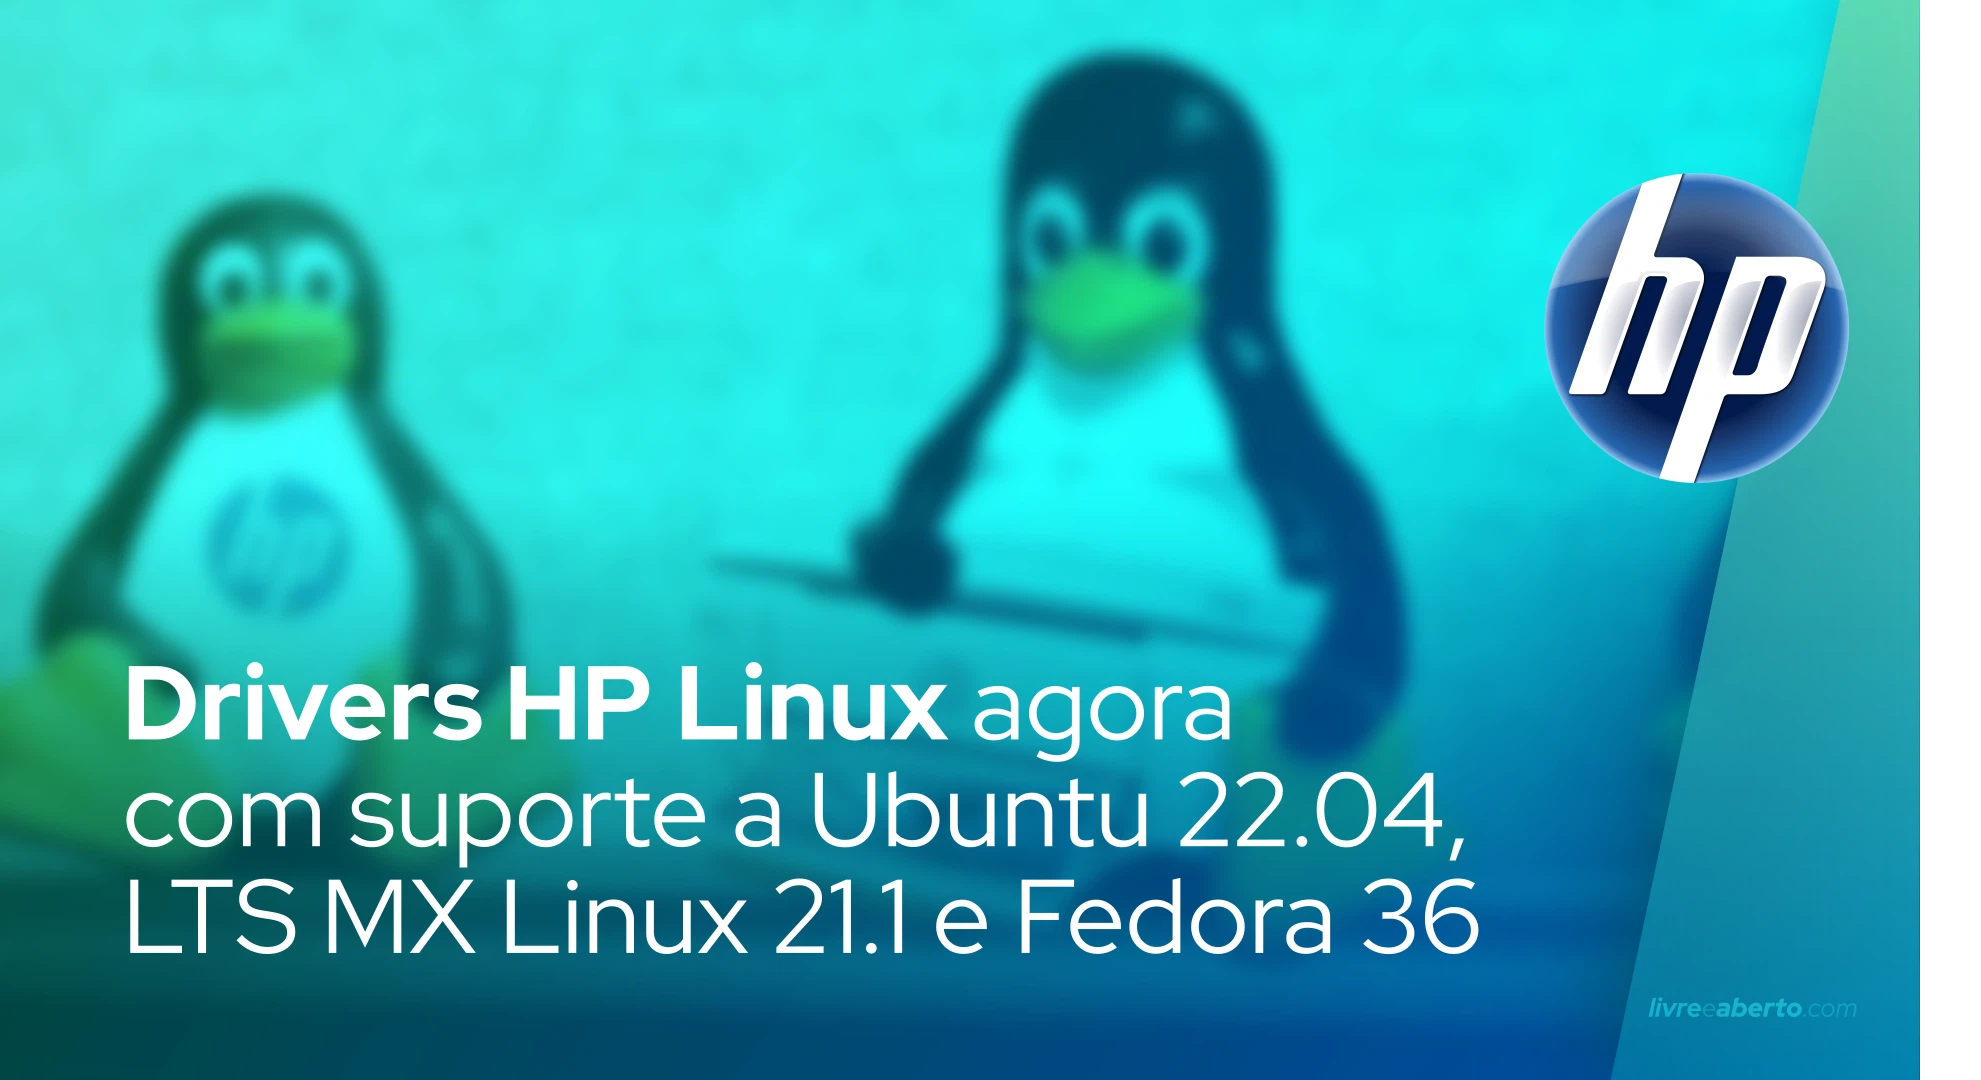 Drivers de imagem e impressão HP Linux agora suportam Ubuntu 22.04 LTS e Fedora 36